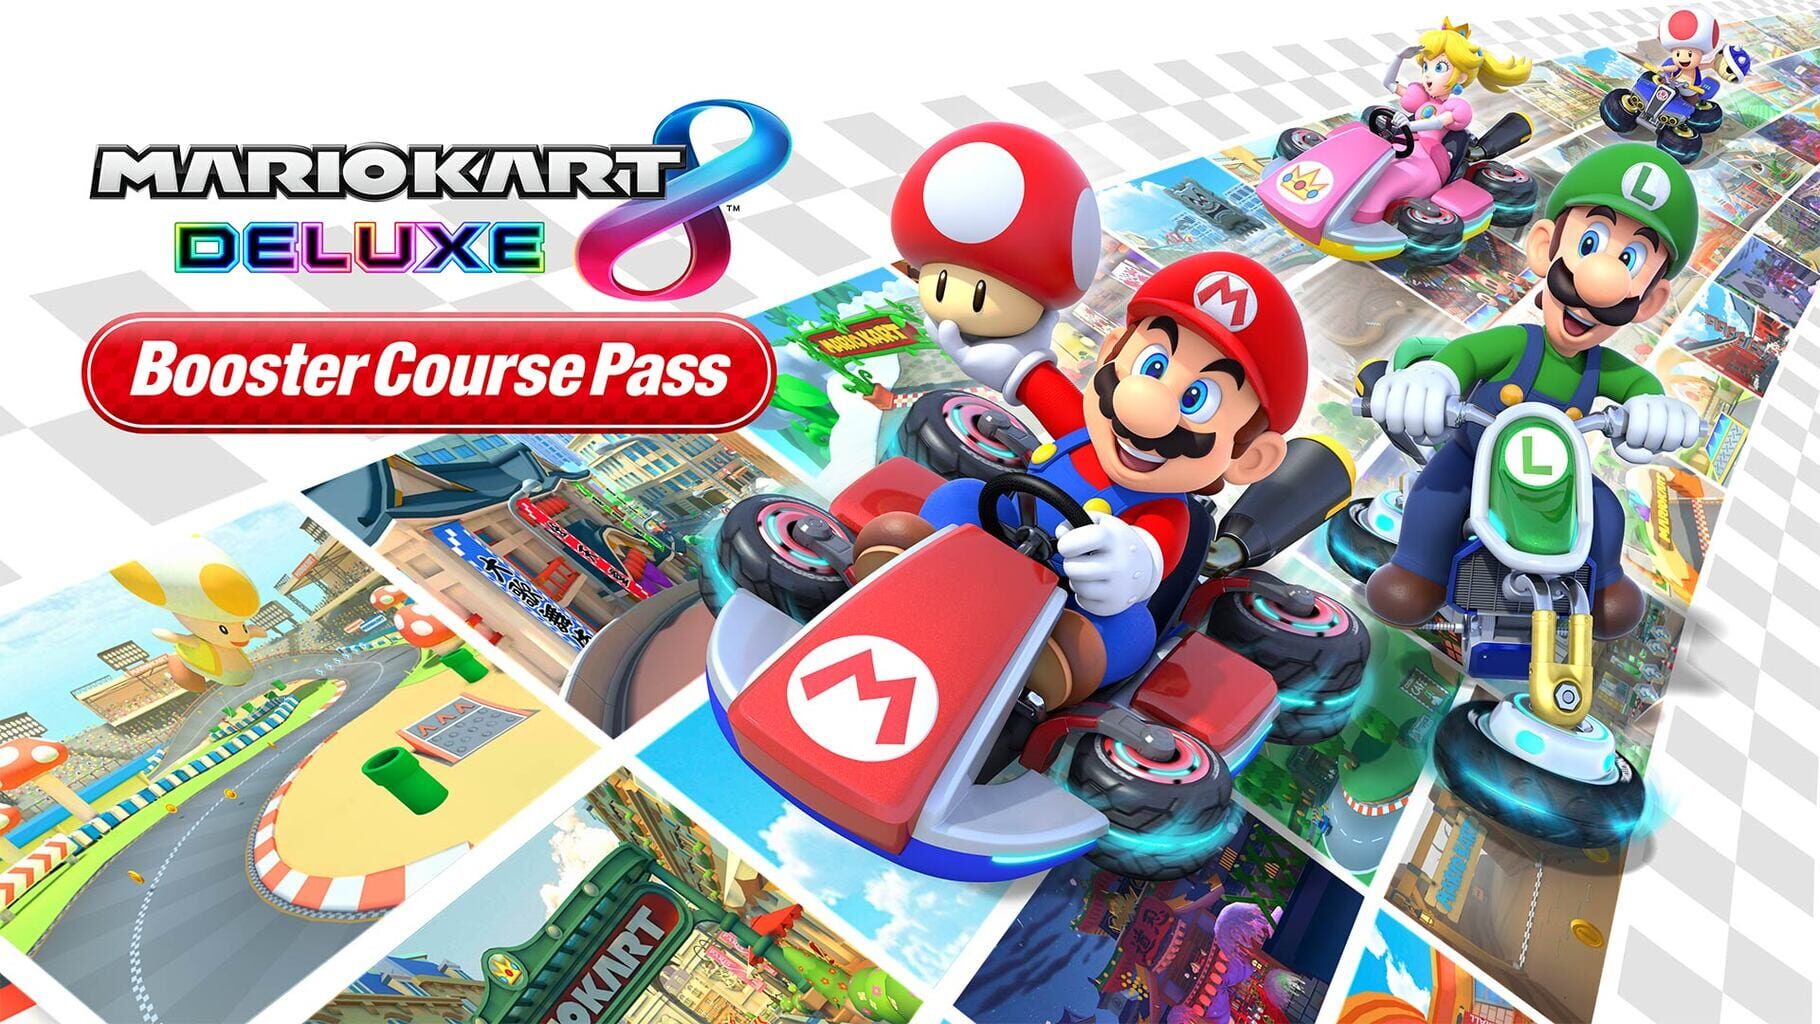 Arte - Mario Kart 8 Deluxe: Booster Course Pass